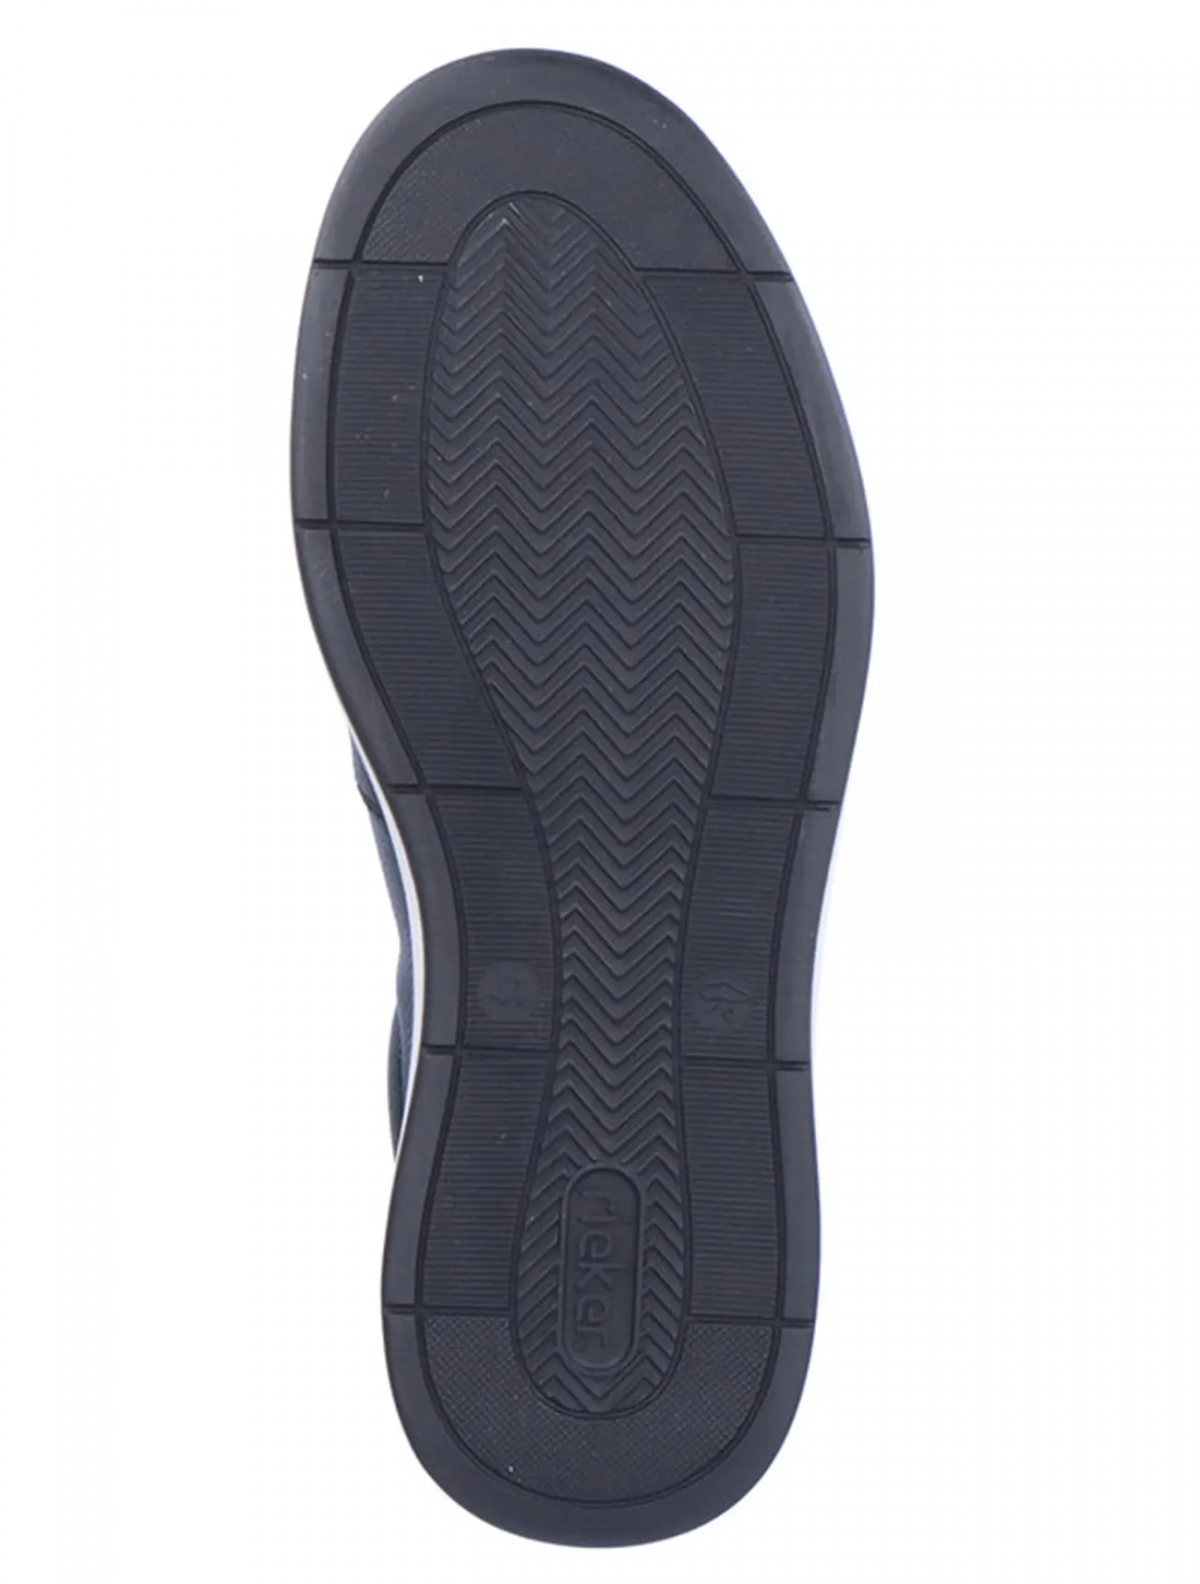 Rieker B6354-14 мужские туфли